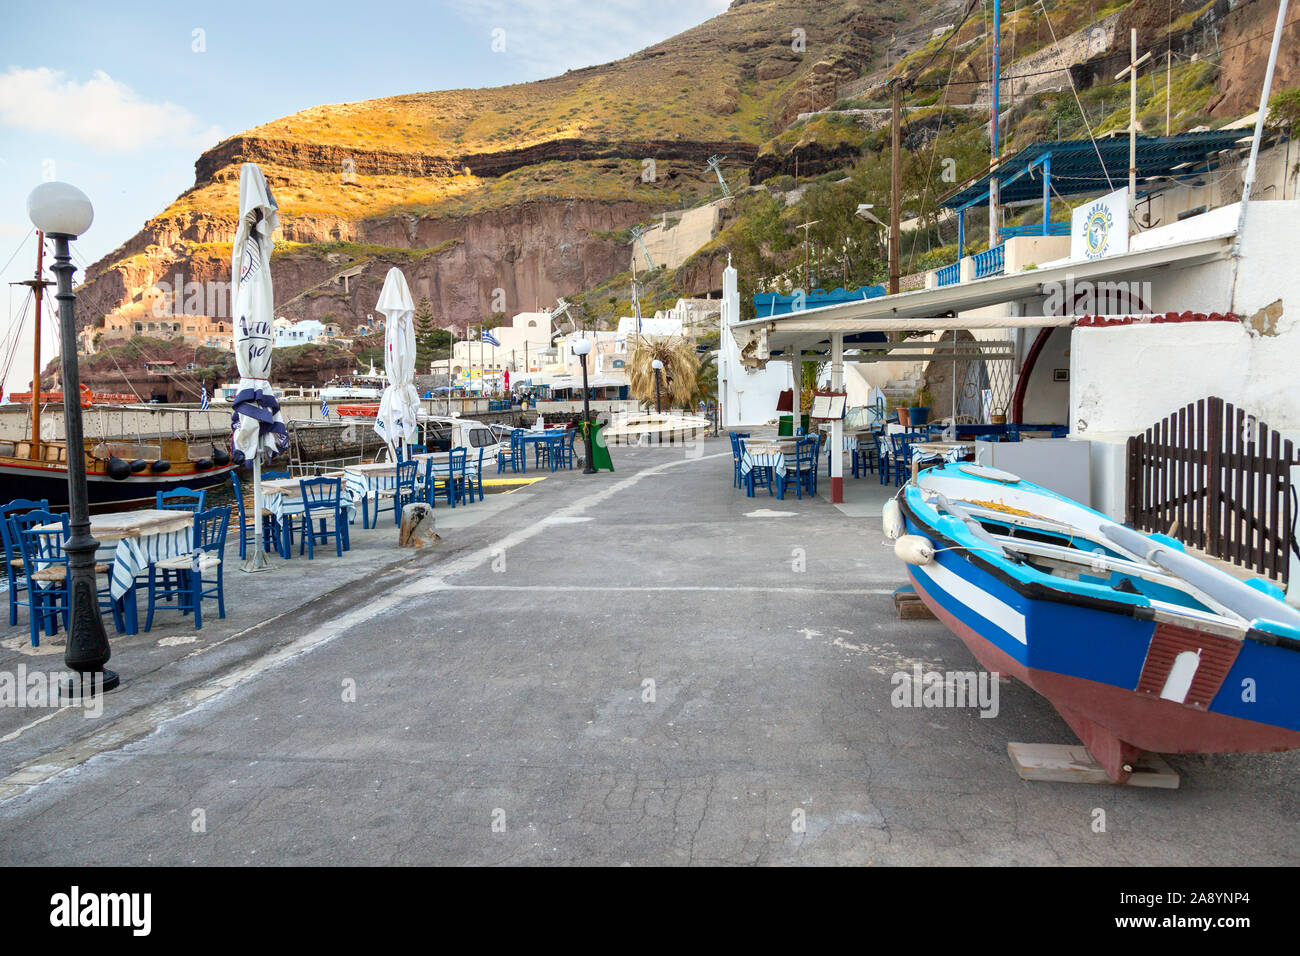 La antigua ciudad portuaria de Skala, debajo de Thira, en la isla griega de Santorini. Temprano en la mañana antes de que los turistas llegan. Foto de stock